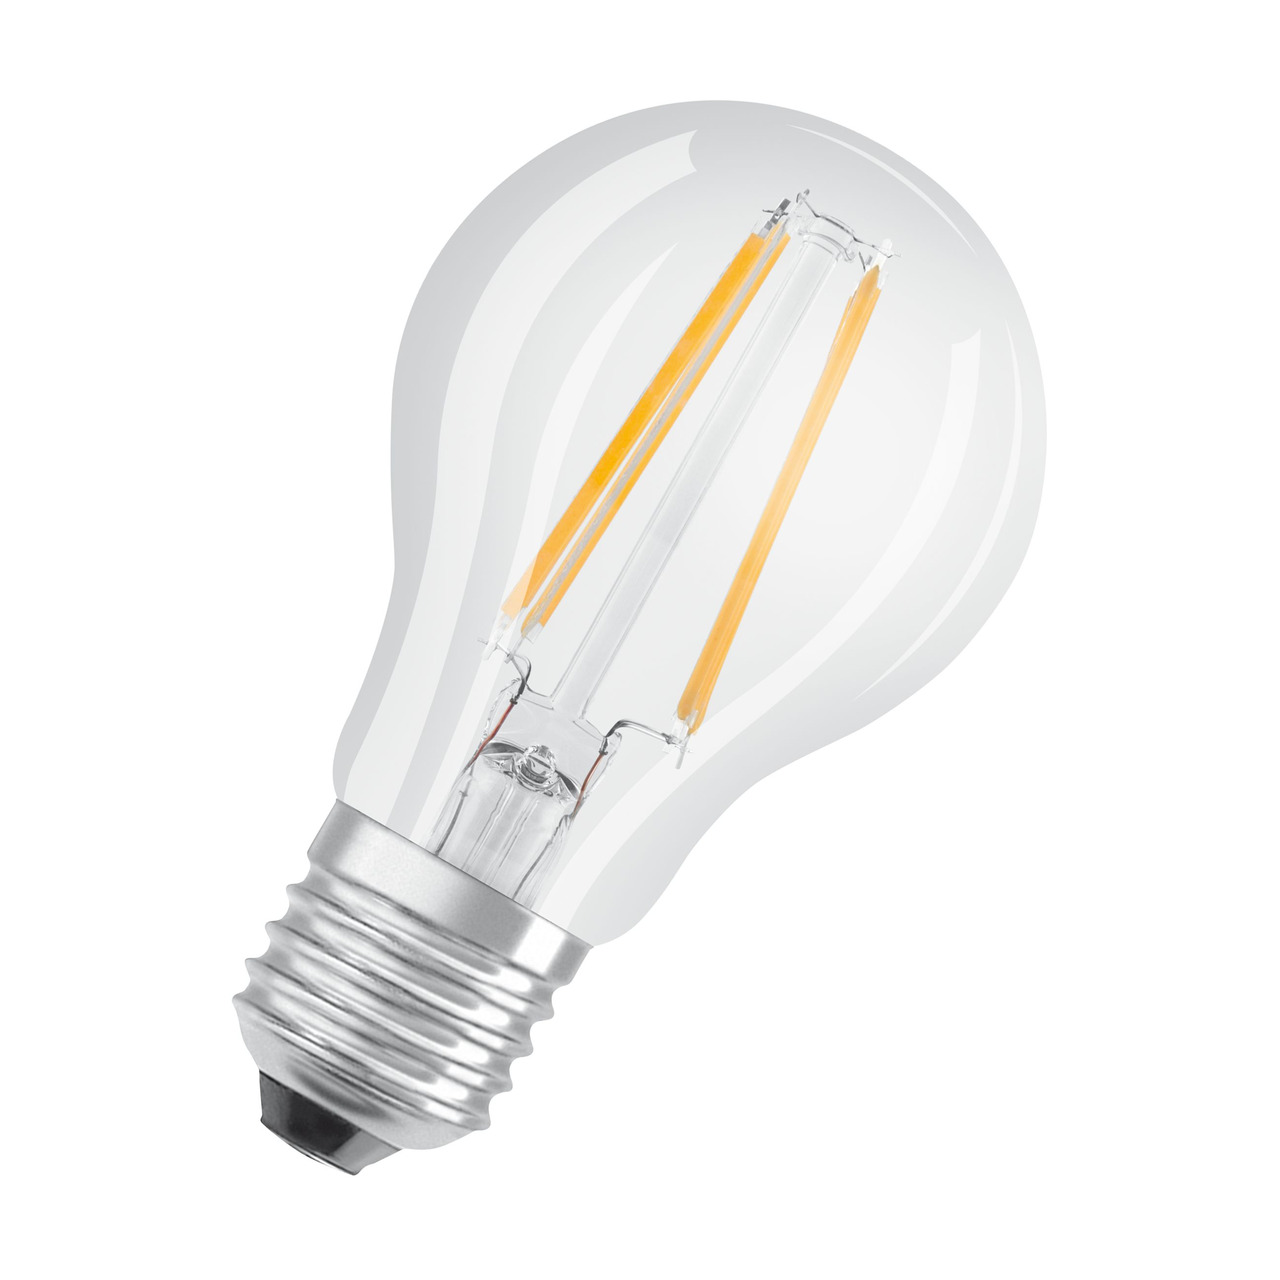 OSRAM 7-W-LED-Lampe A60- E27- 806 lm- warmweiss- klar- dimmbar unter Beleuchtung